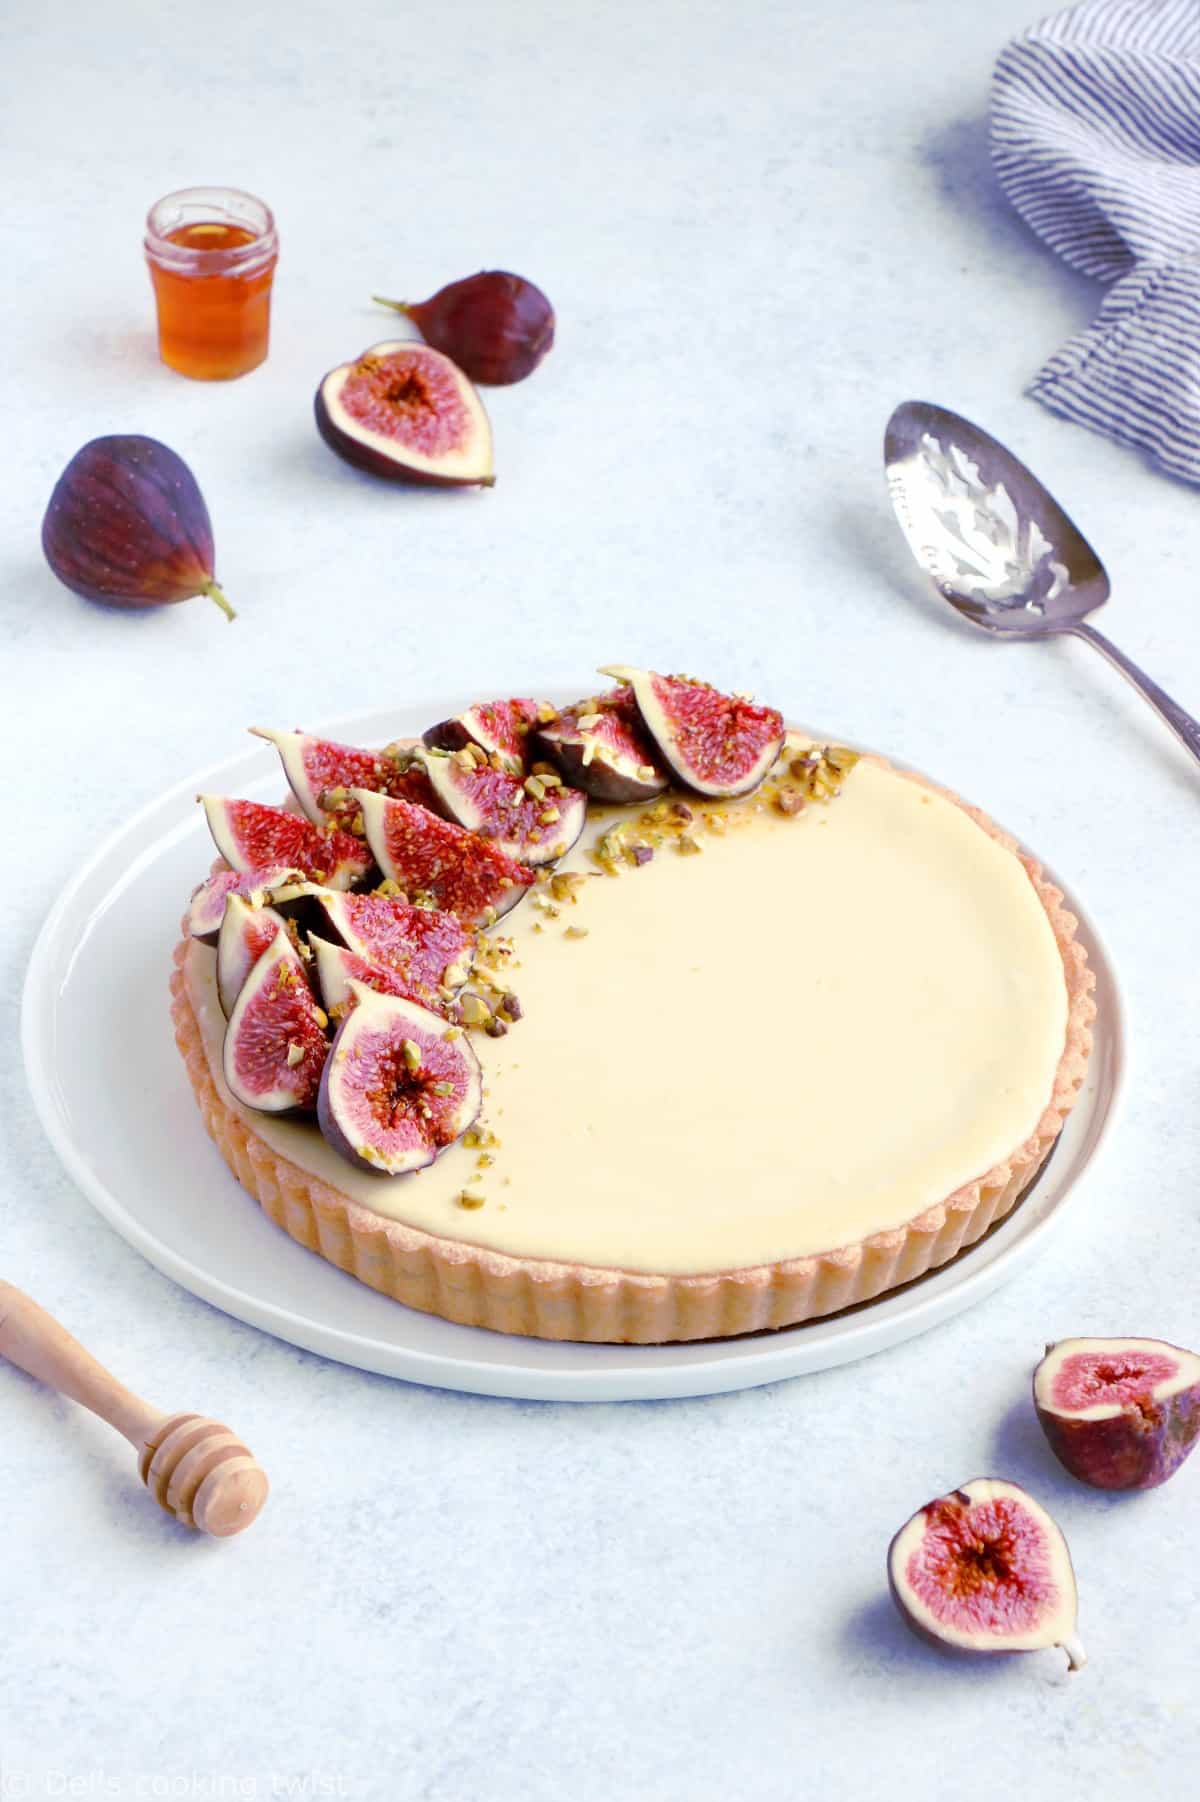 Une tarte cheesecake aux figues, chèvre et miel que l'on croirait tout droit sortie de chez la pâtissier et qui est pourtant toute simple à réaliser, avec de bonnes figues fraîches.